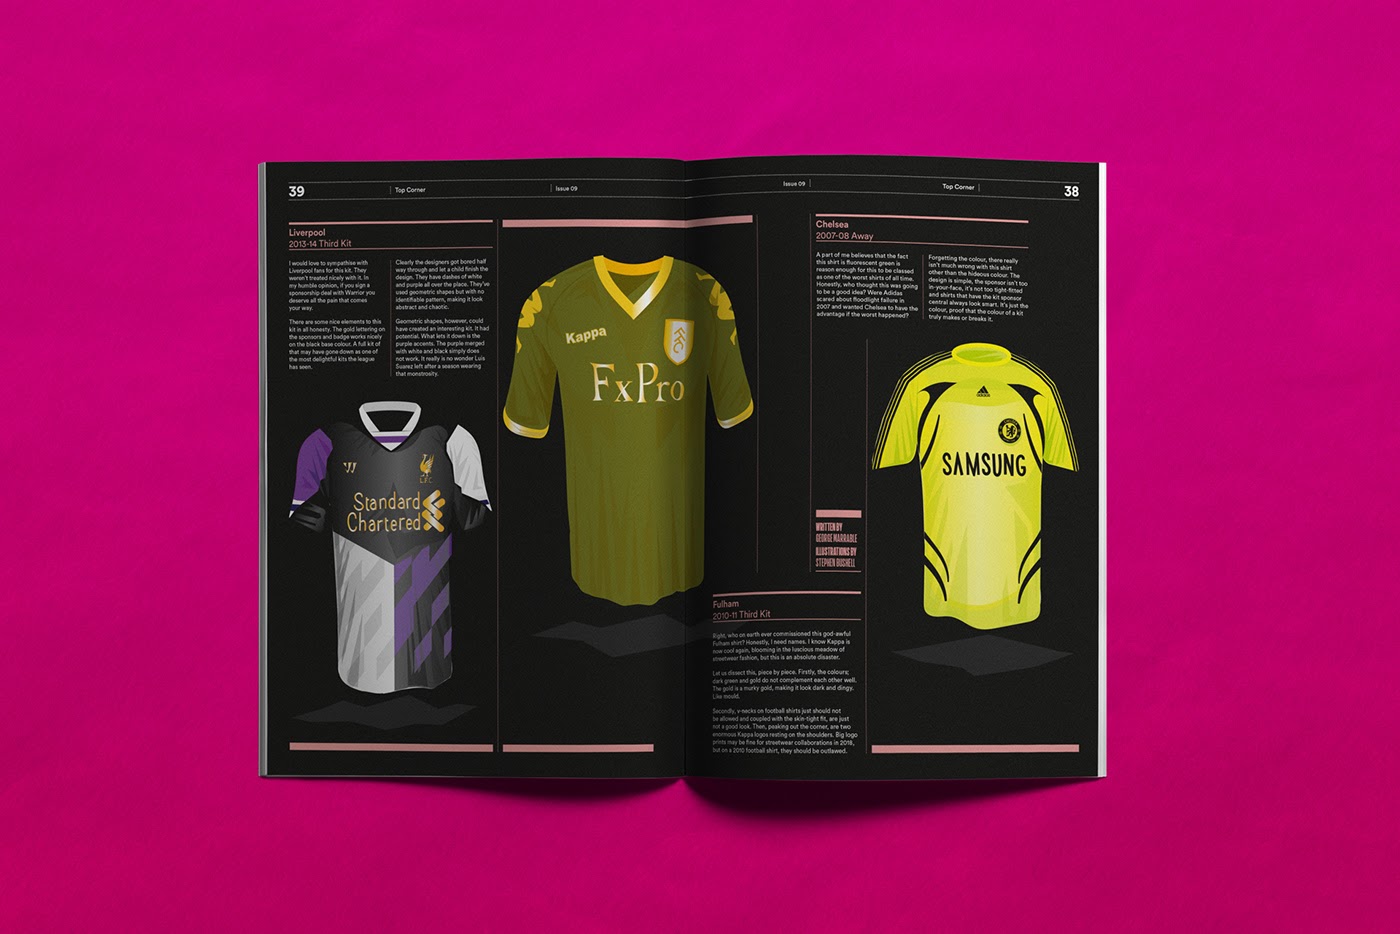 时尚经典的足球杂志版面设计作品欣赏。